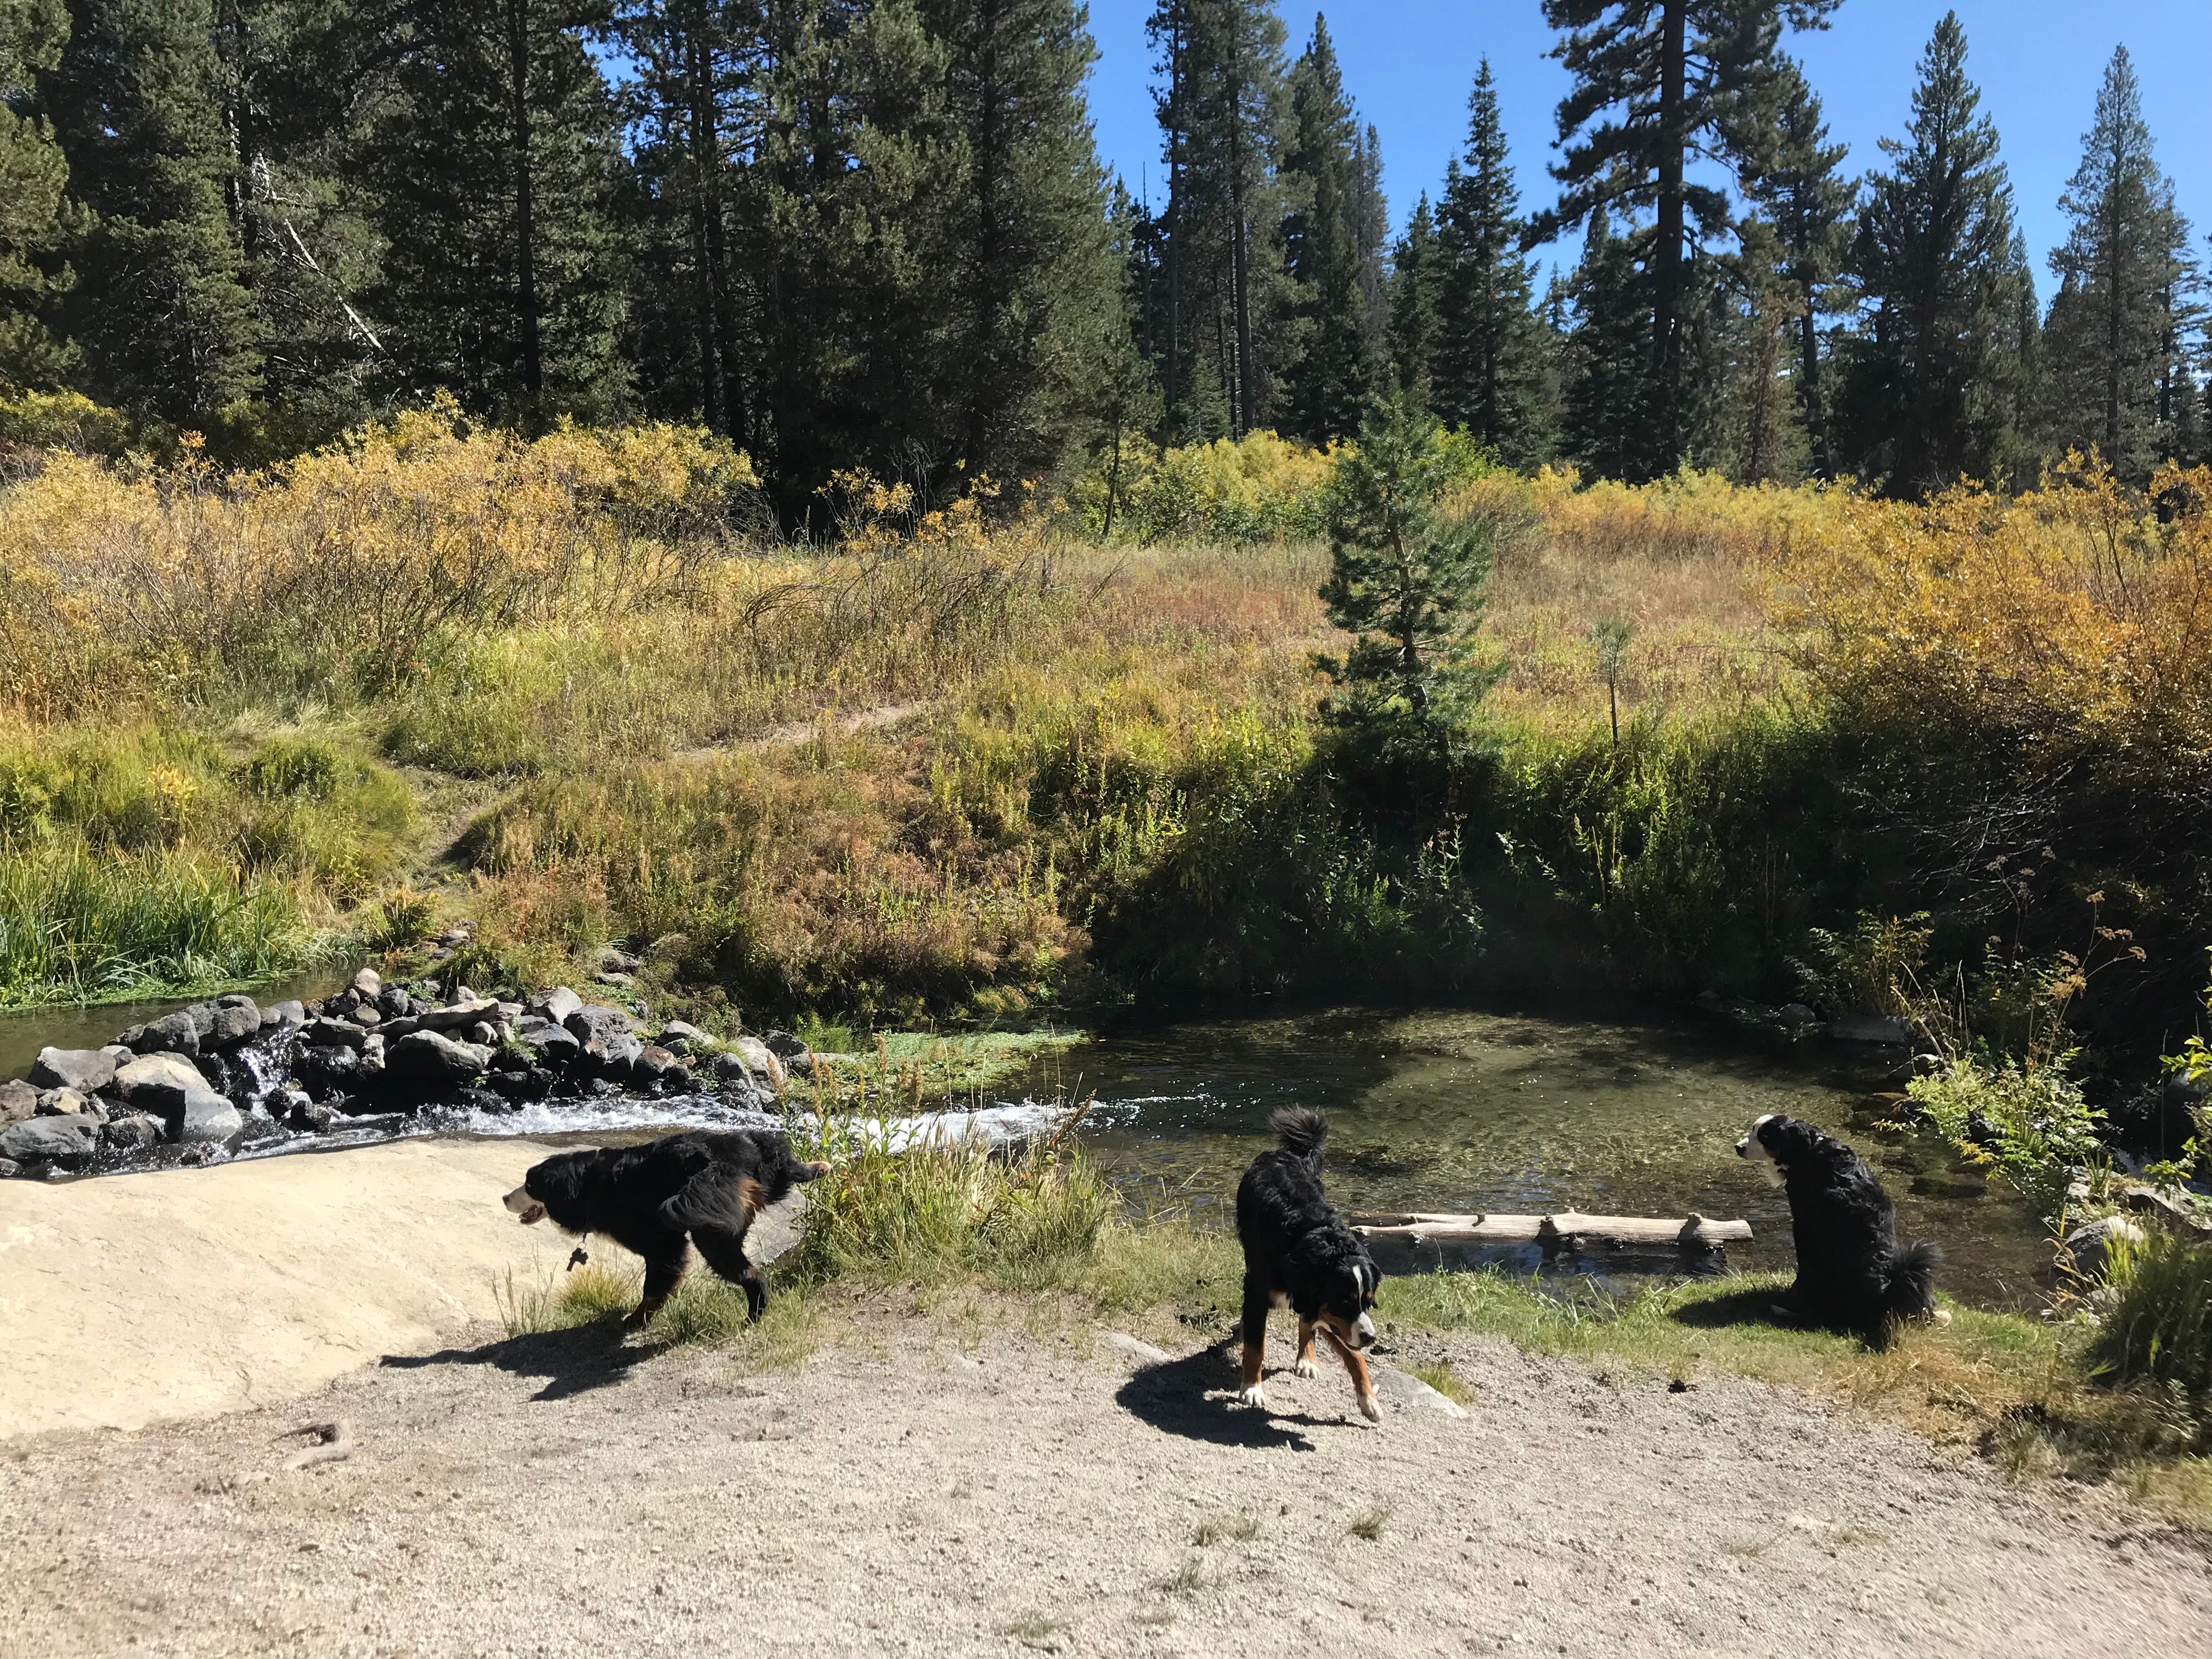 Dogs enjoying campground tour